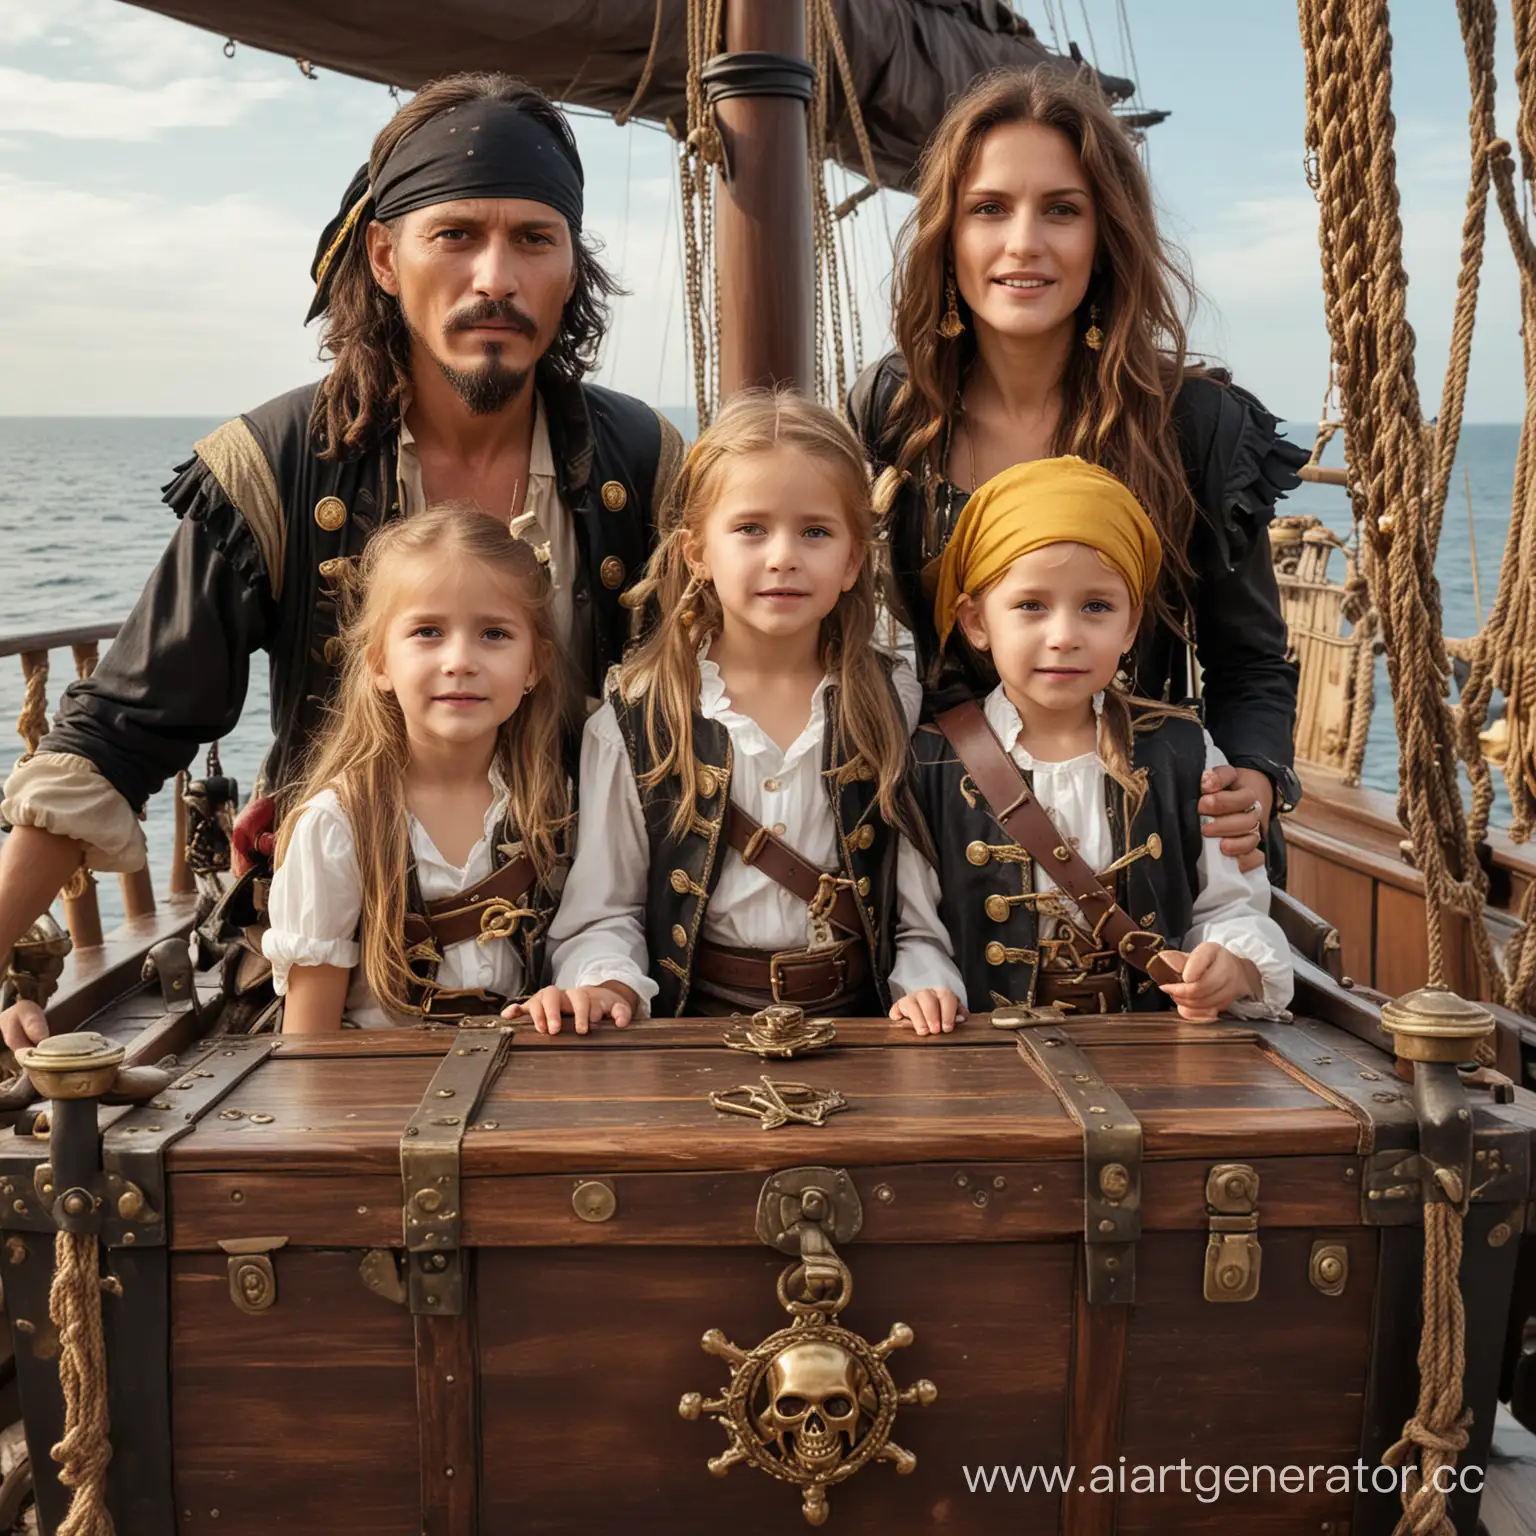 семья пиратов, состоящая из 4 человек - мама, папа и двое детей, стоят на корабле, рядом открытый сундук с золотом